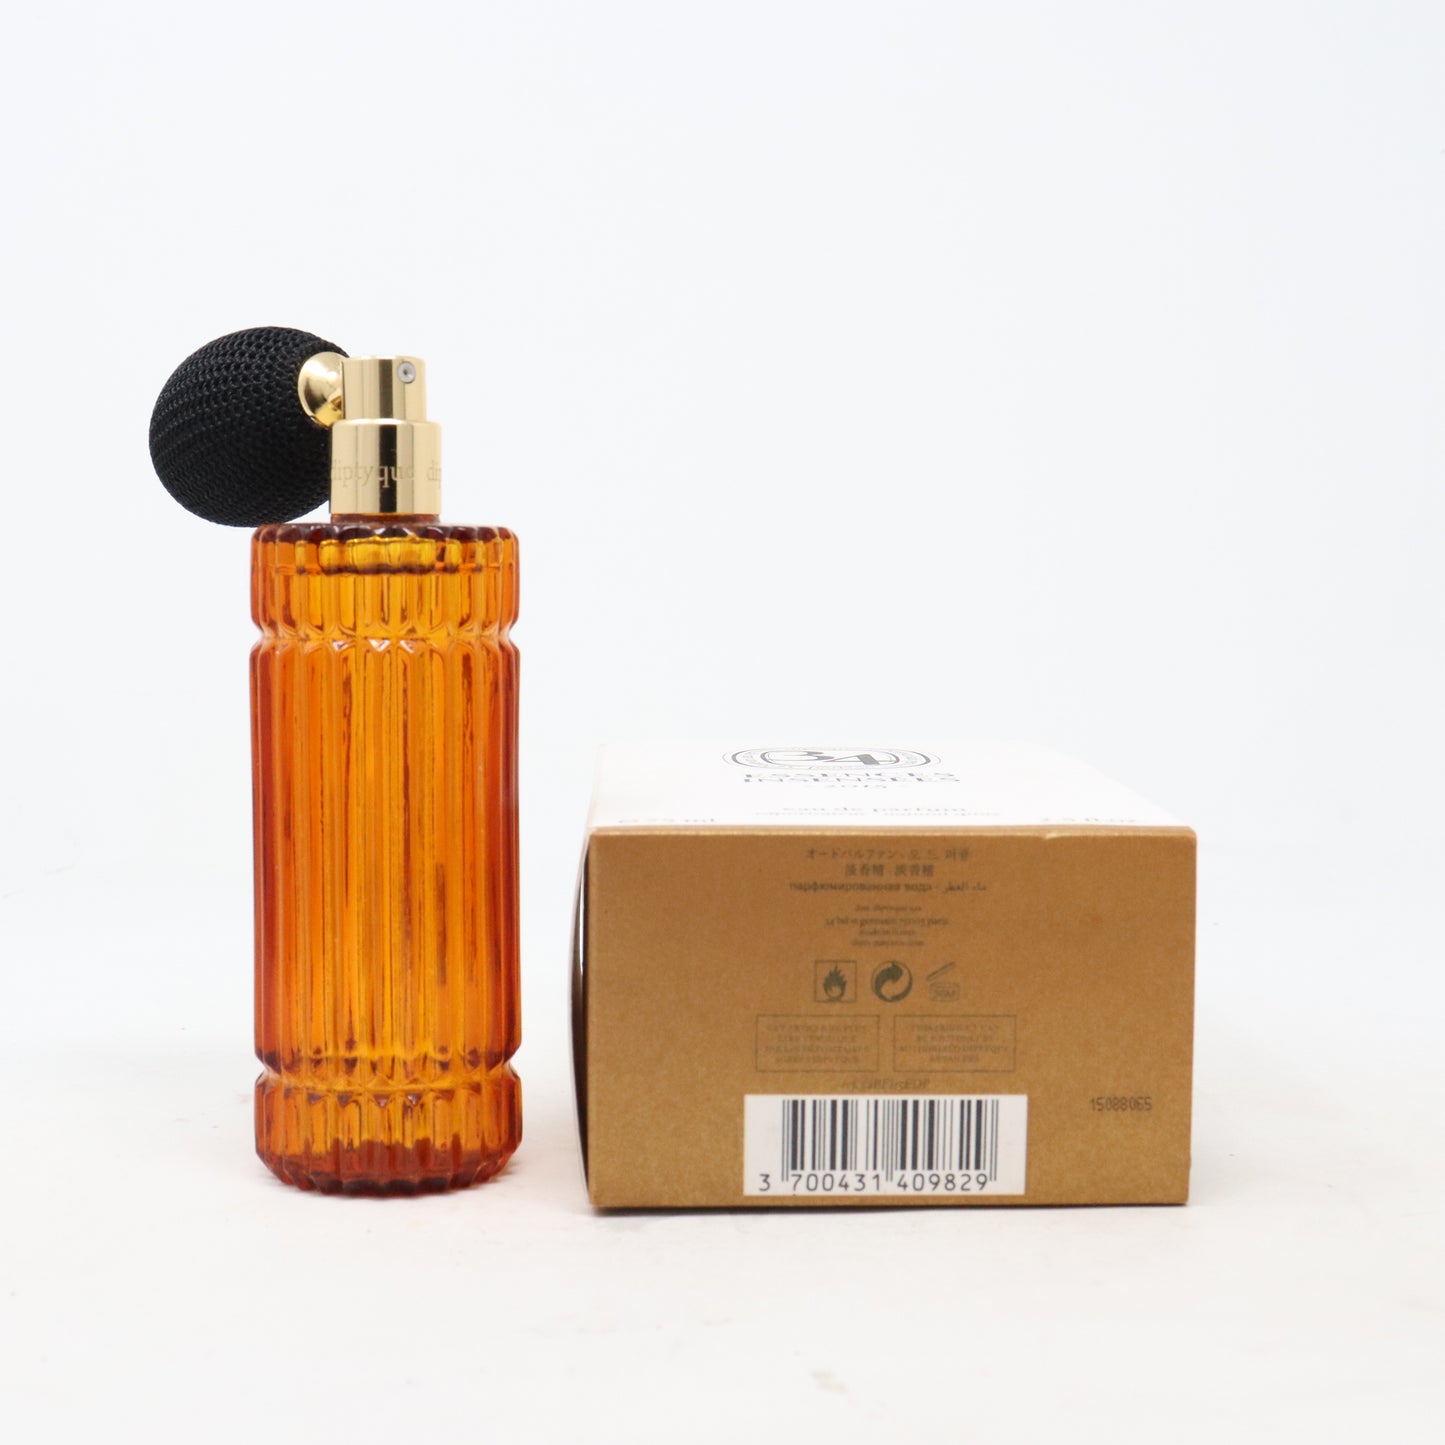 Essences Insensees by Diptyque Eau De Parfum 2015 2.5oz/75ml Spray New With Box